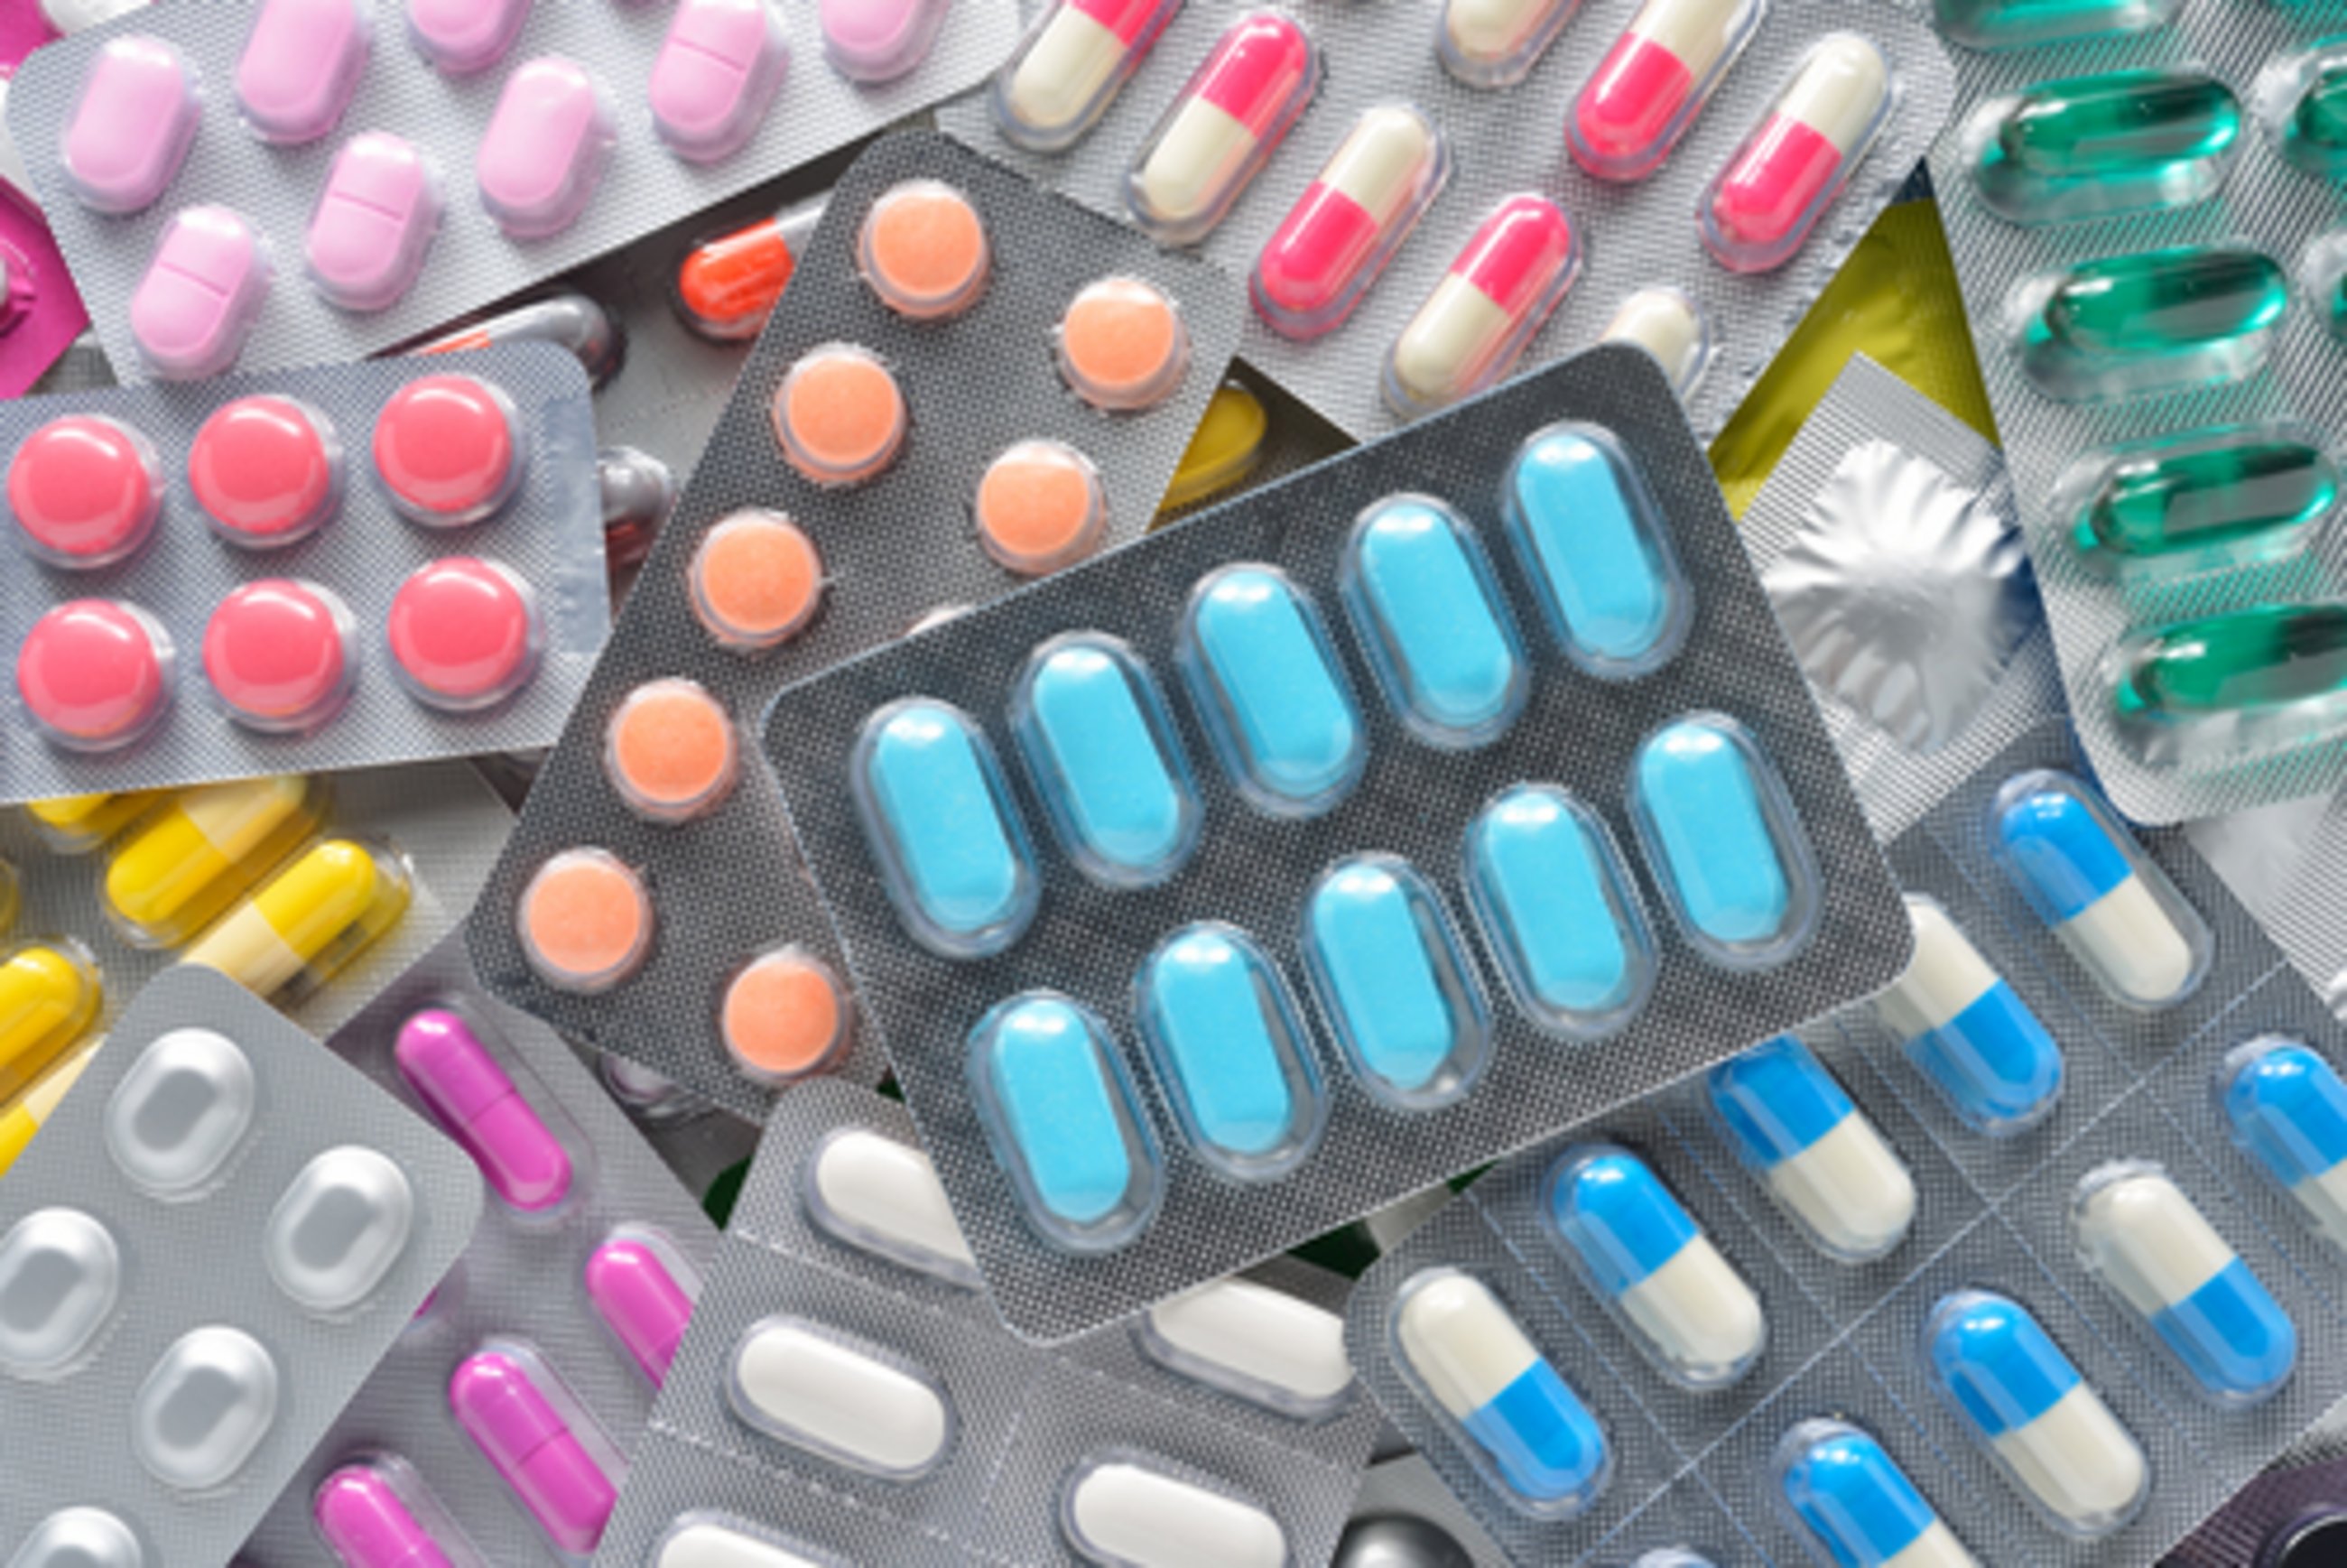 Änderungen des Pharmakovigilanz-Systems (Verordnung/Richtlinie)